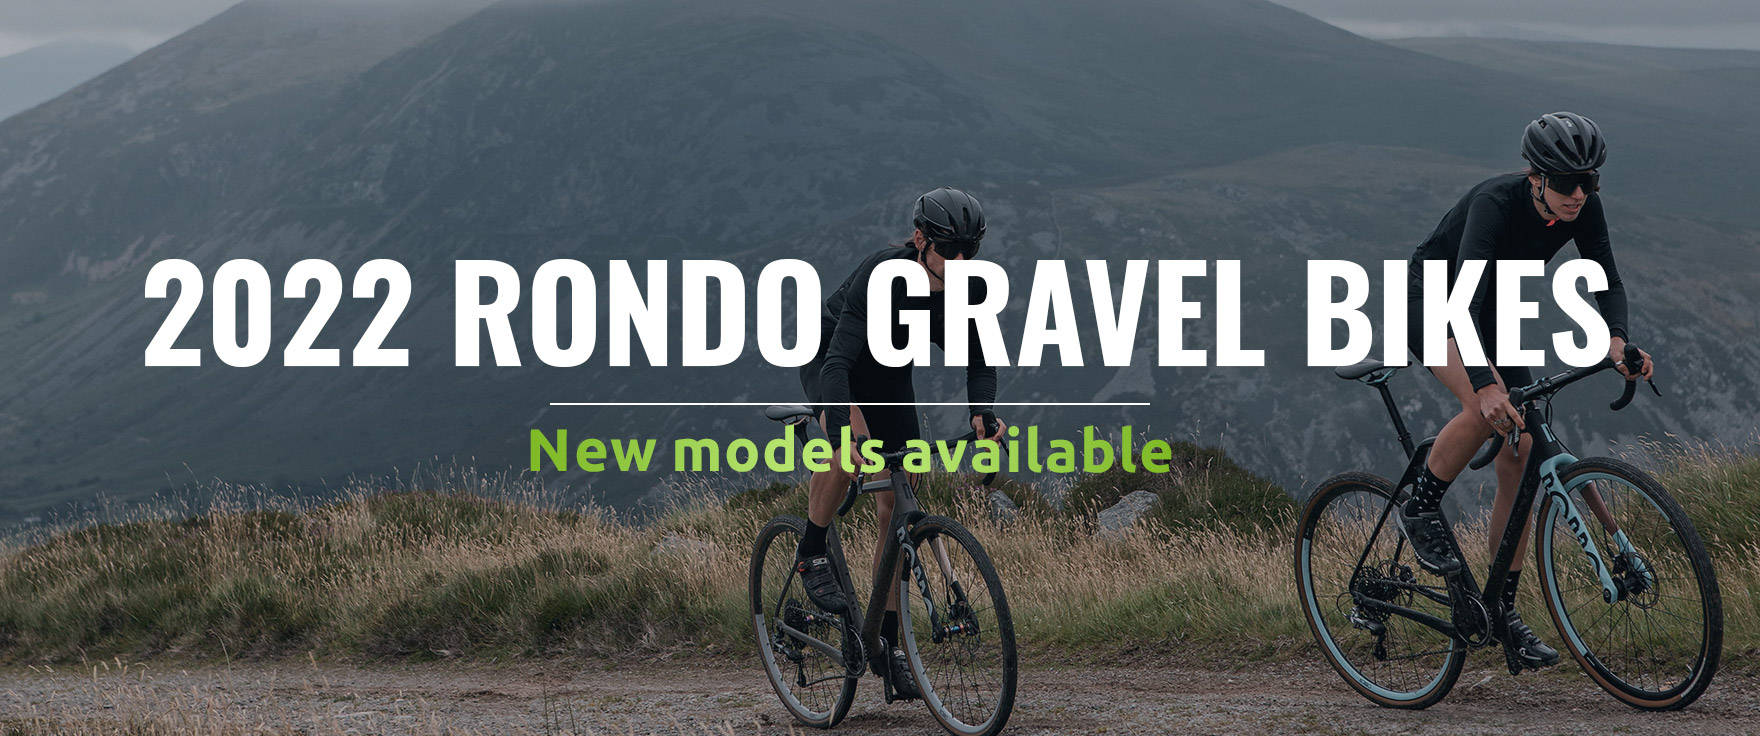 2022 Rondo Gravel Bikes